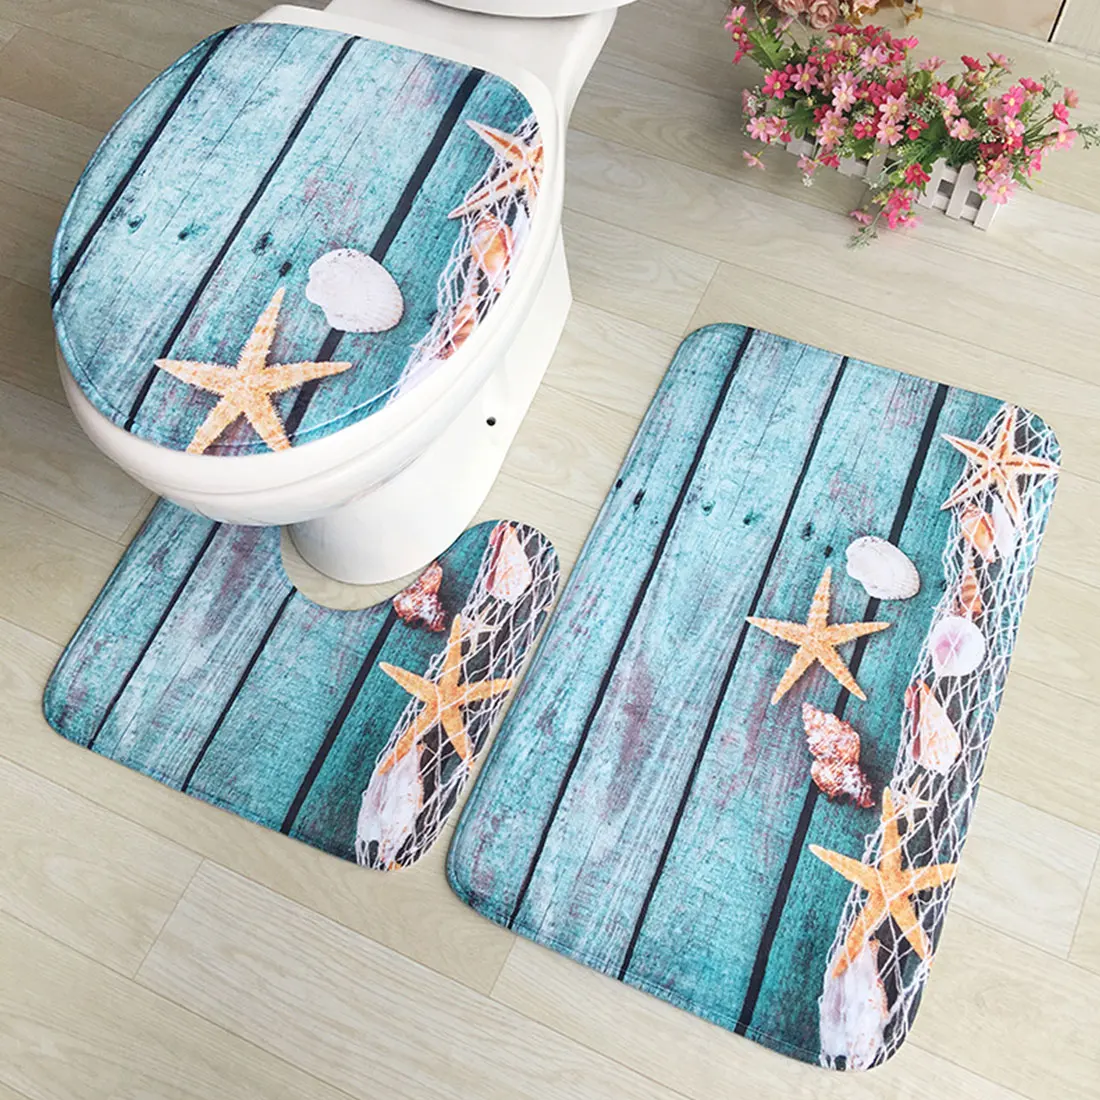 Коврик фланелевый набор с принтом для ванной коврик для ванной впитывающий Противоскользящий базовый Ковер Крышка для унитаза крышка для туалета Прачечная